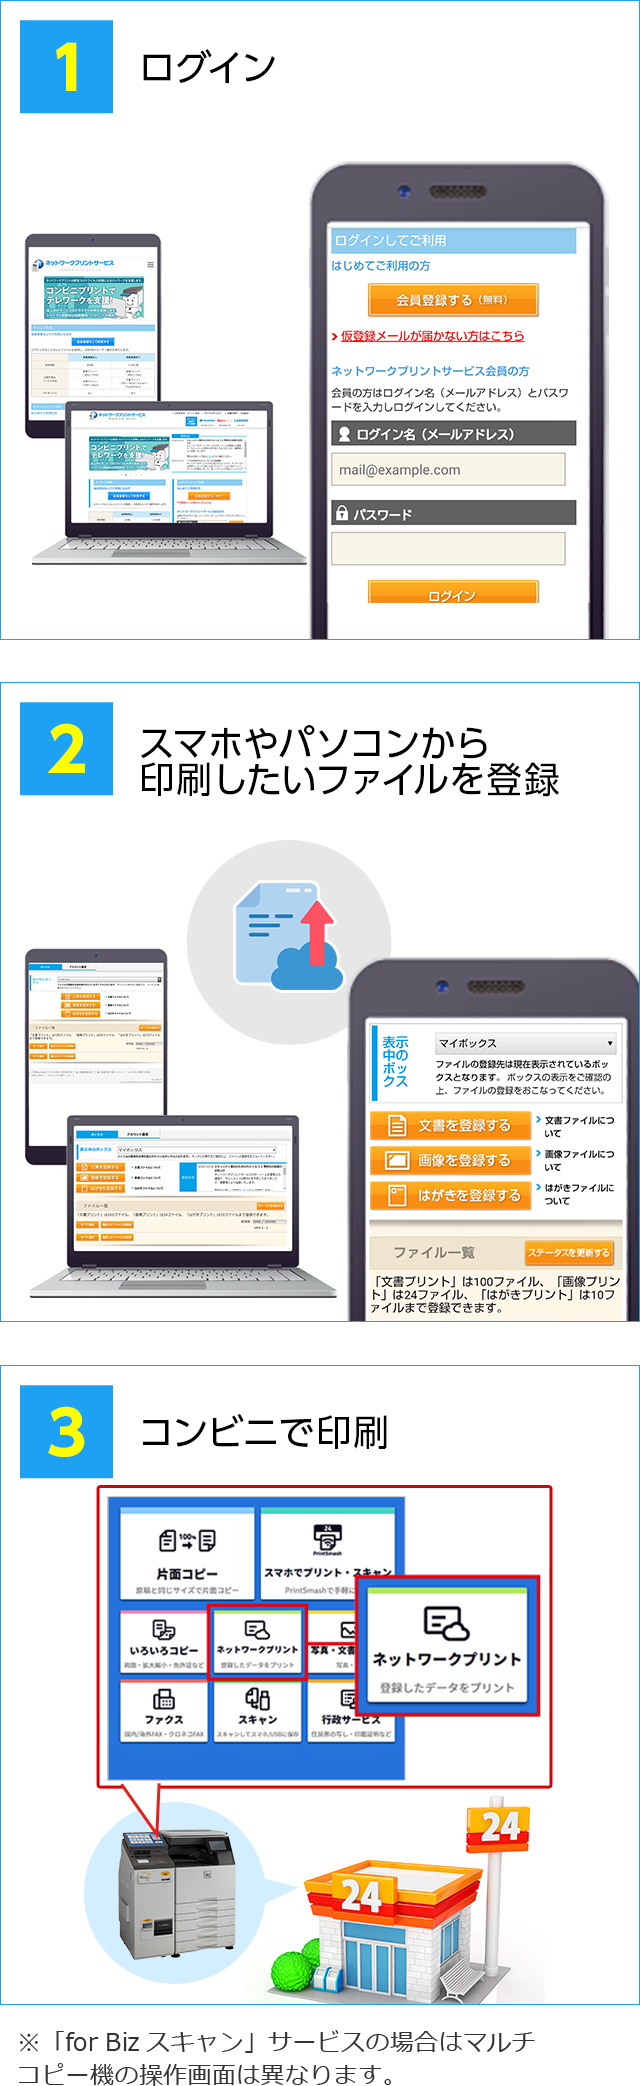 ネットワークプリントの法人向けサービス 学校 教育機関 シャープマーケティングジャパン